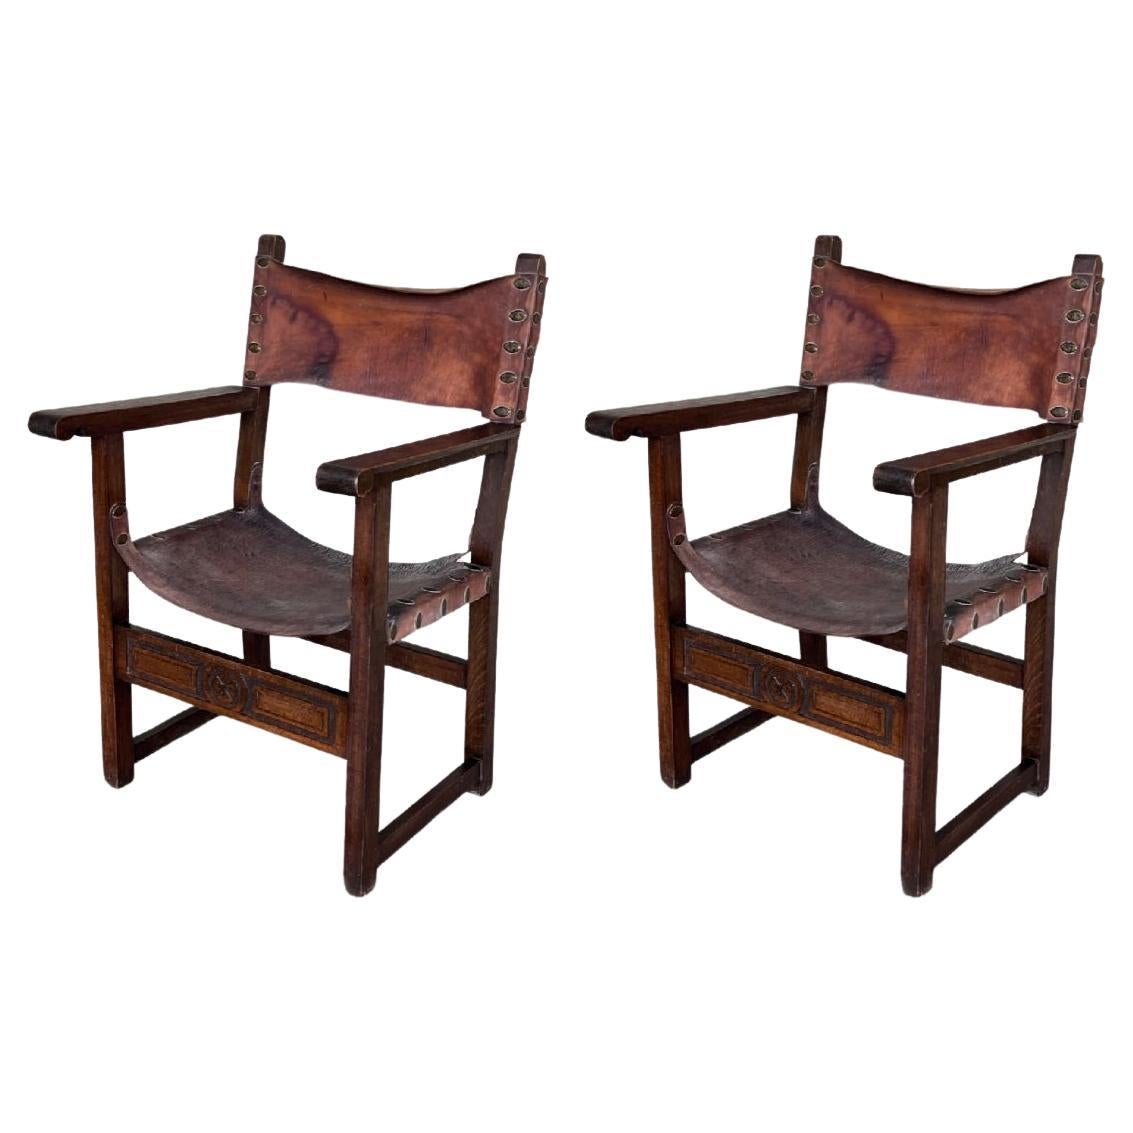 Paire de fauteuils sculptés de style colonial espagnol du 19ème siècle avec cuir